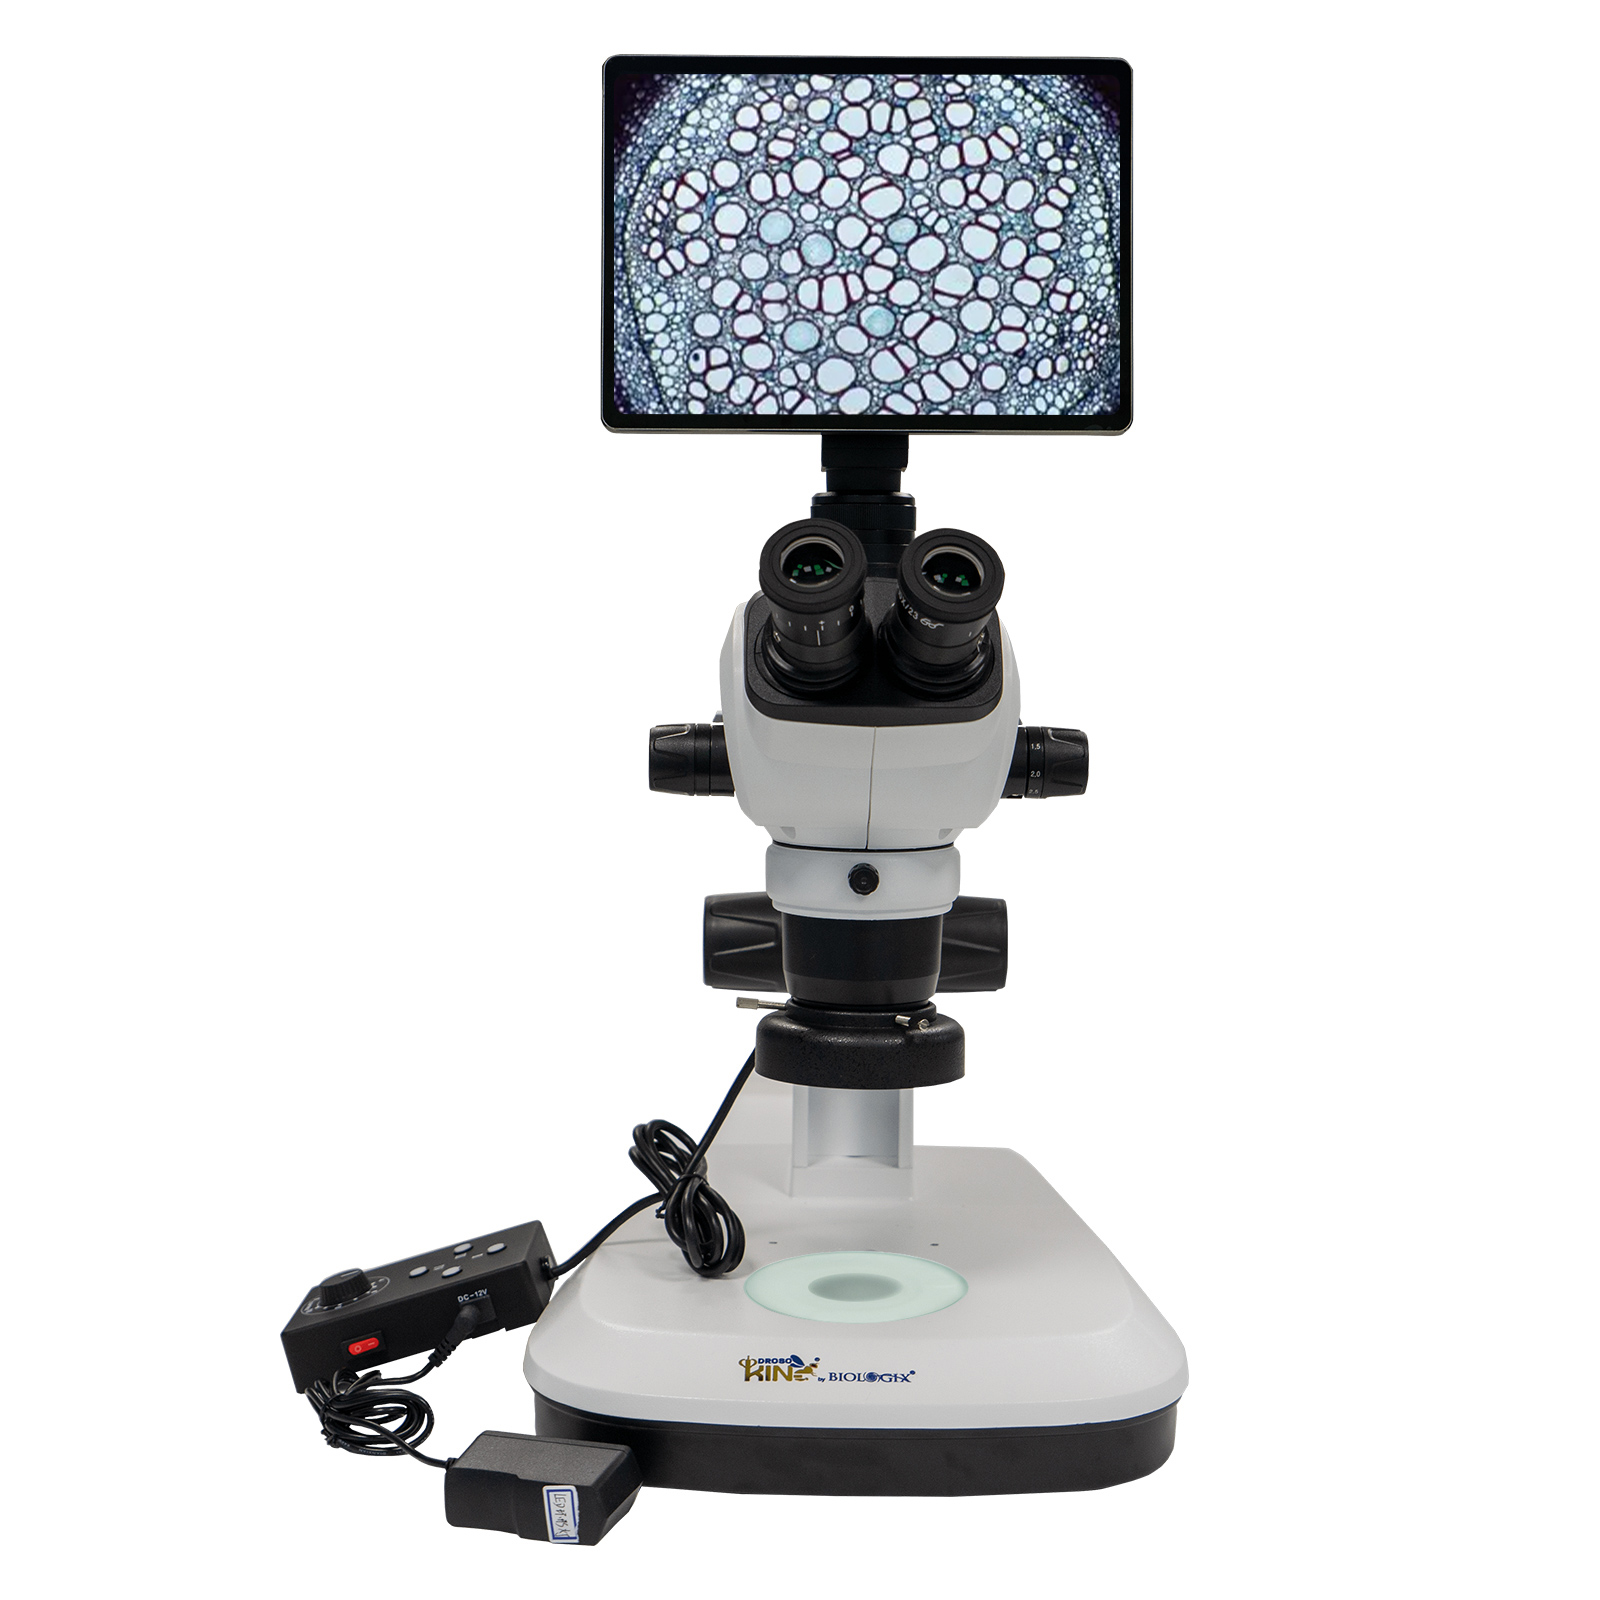 体式三目显微镜-3W-LED光源和环形灯